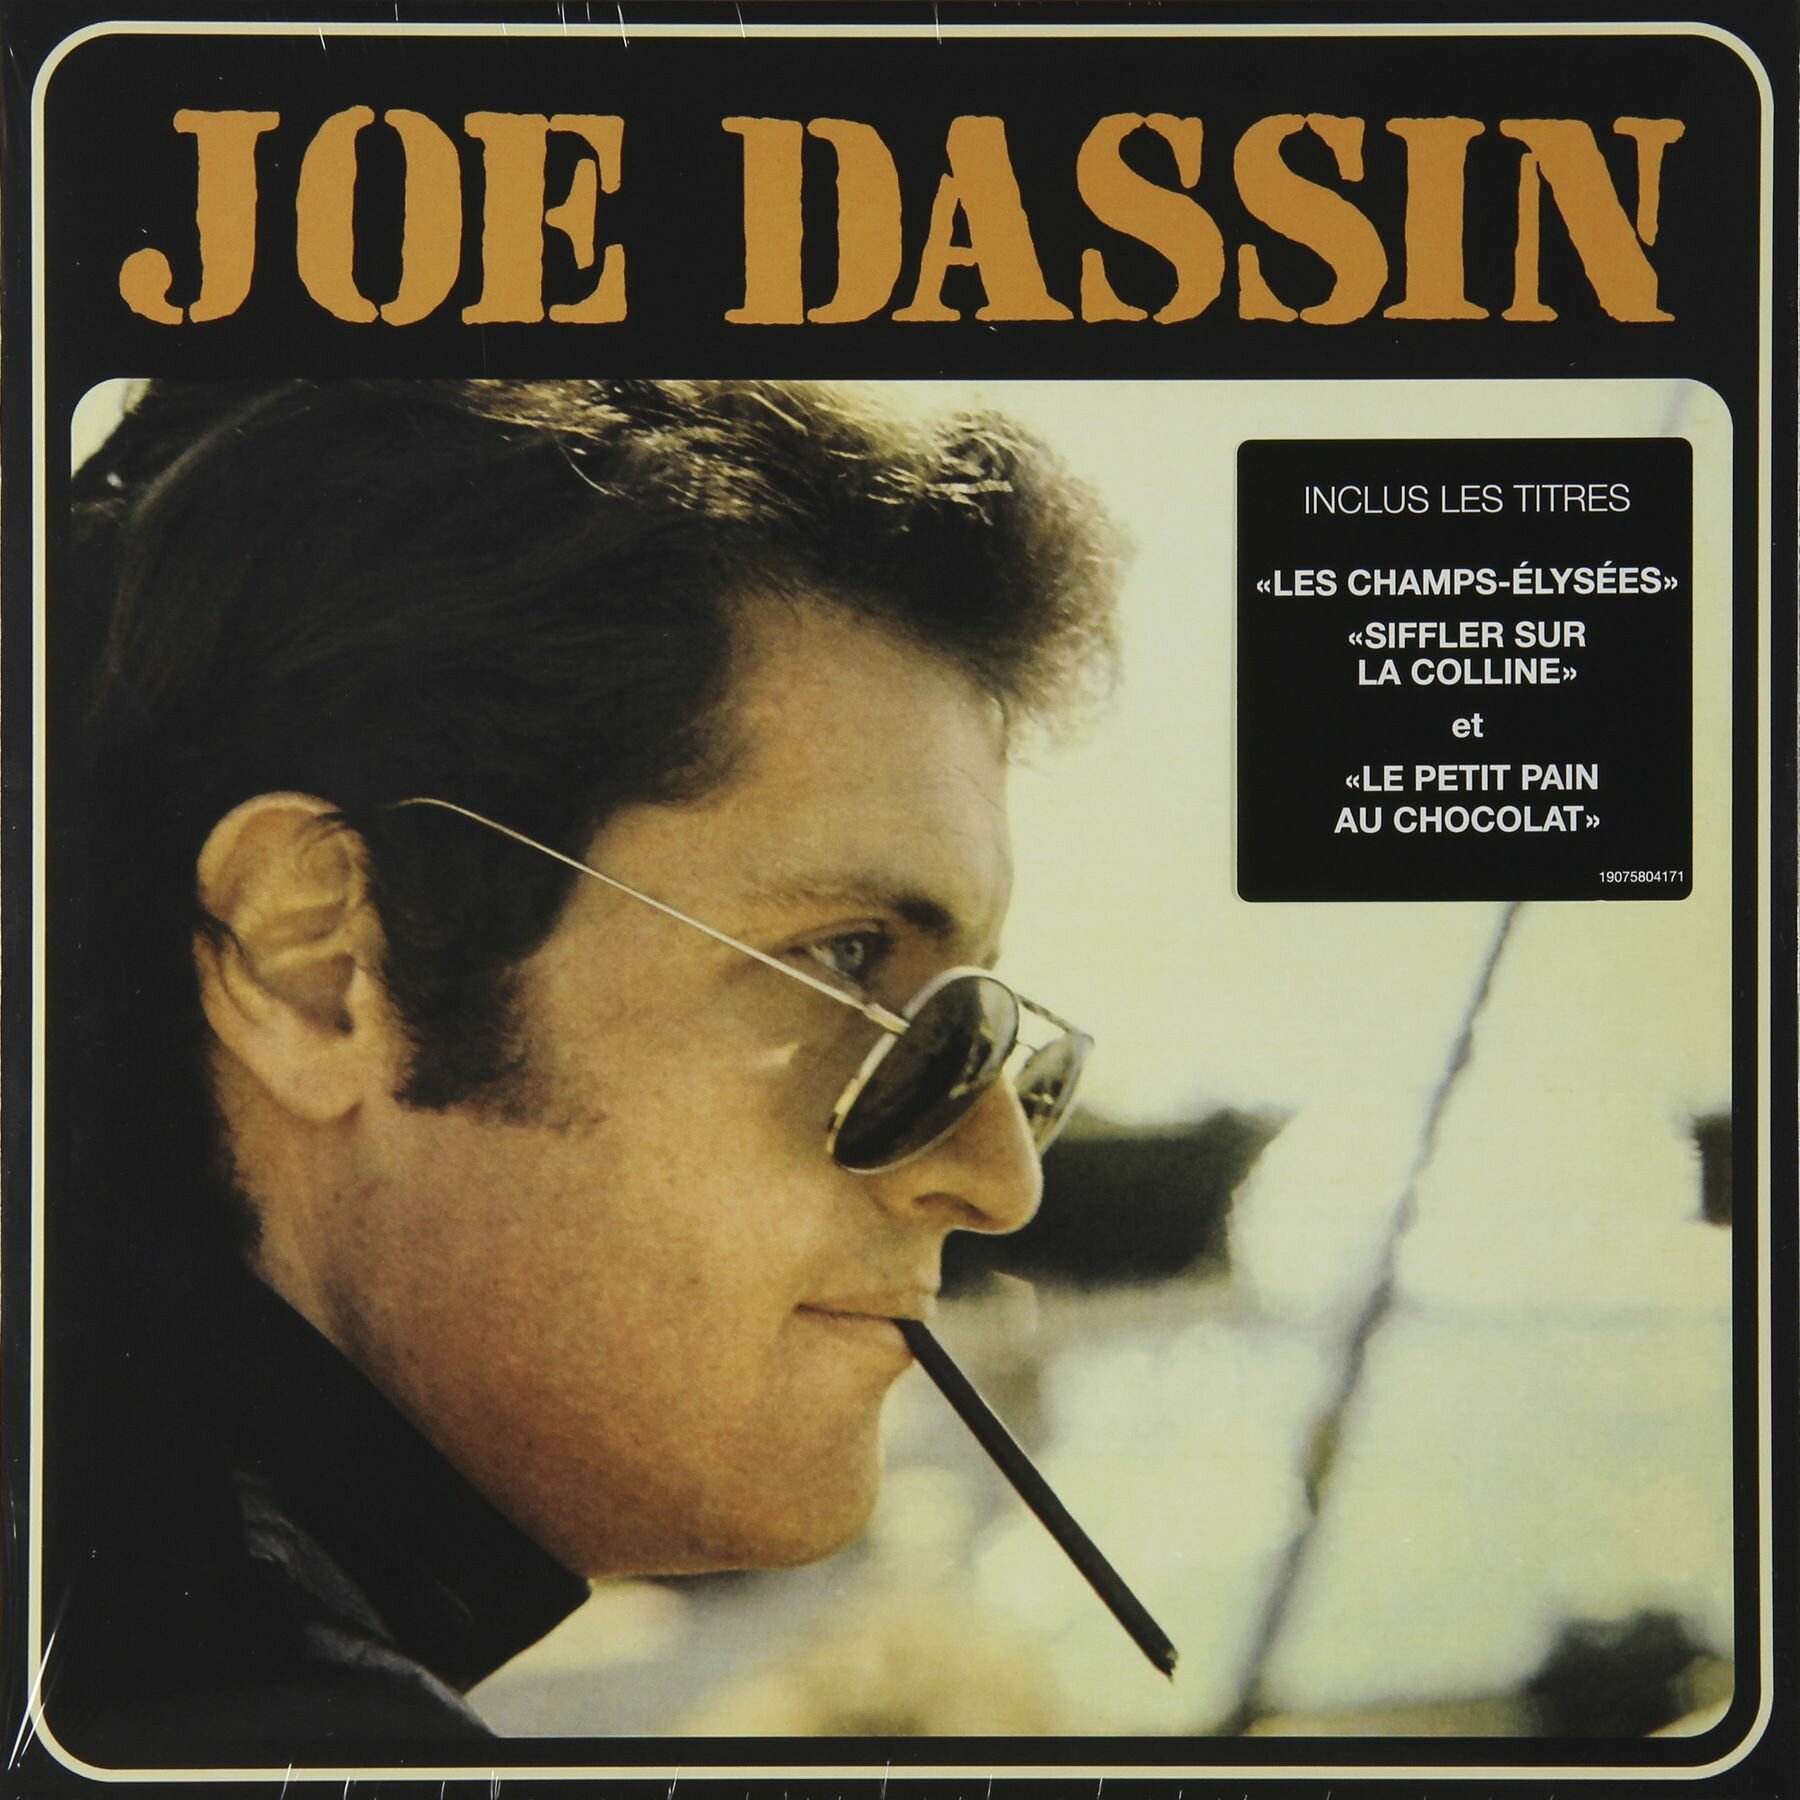 Joe Dassin – Joe Dassin (Les Champs-Élysées)